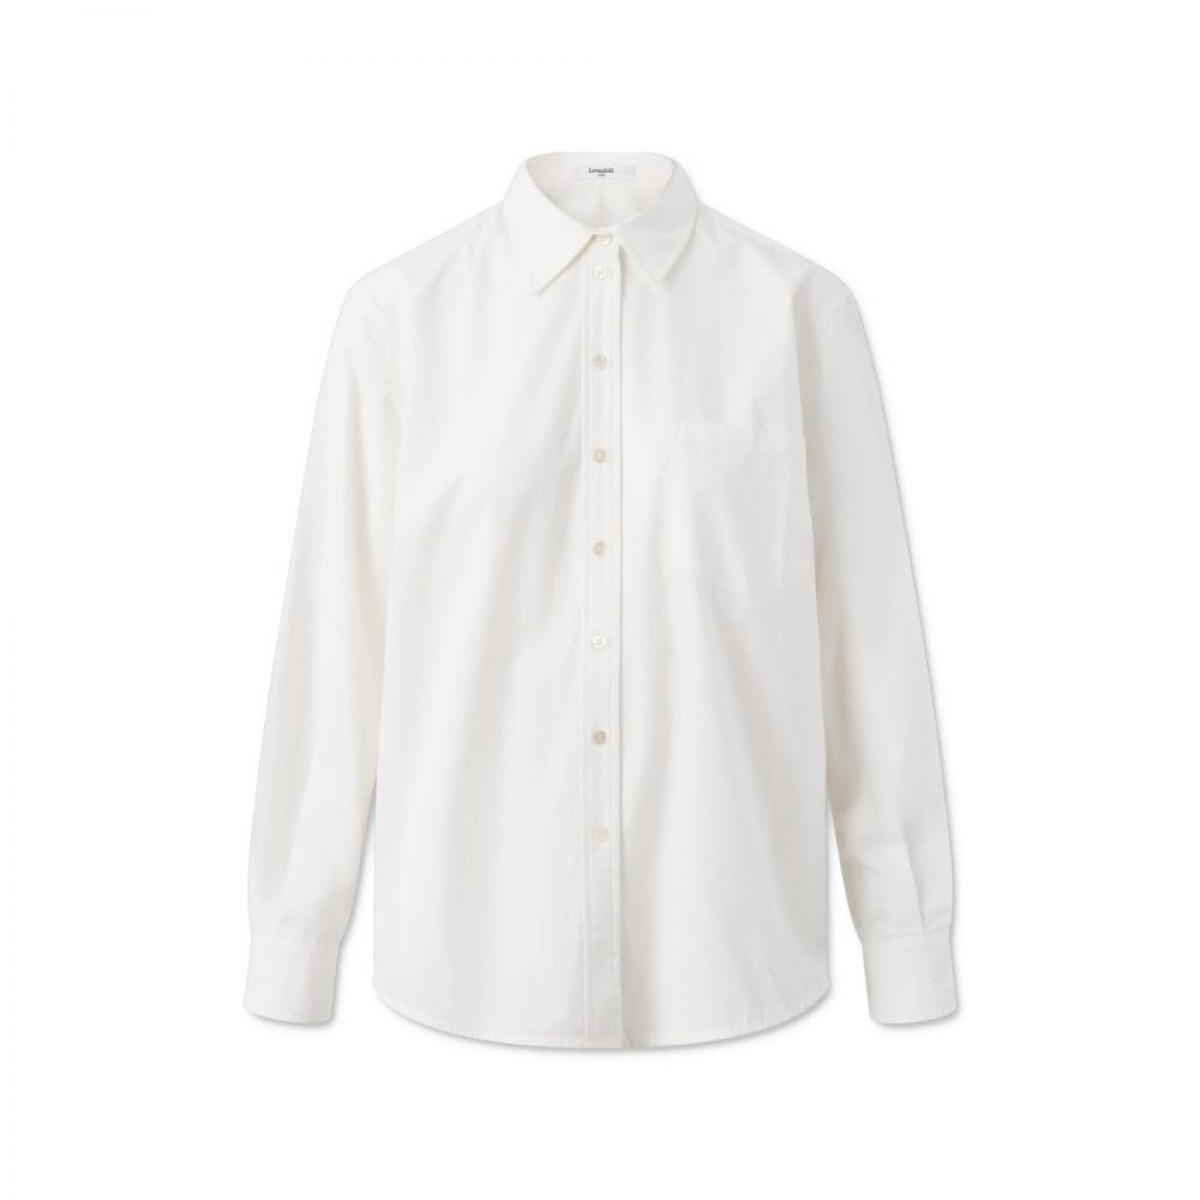 elotta shirt - bright white - front